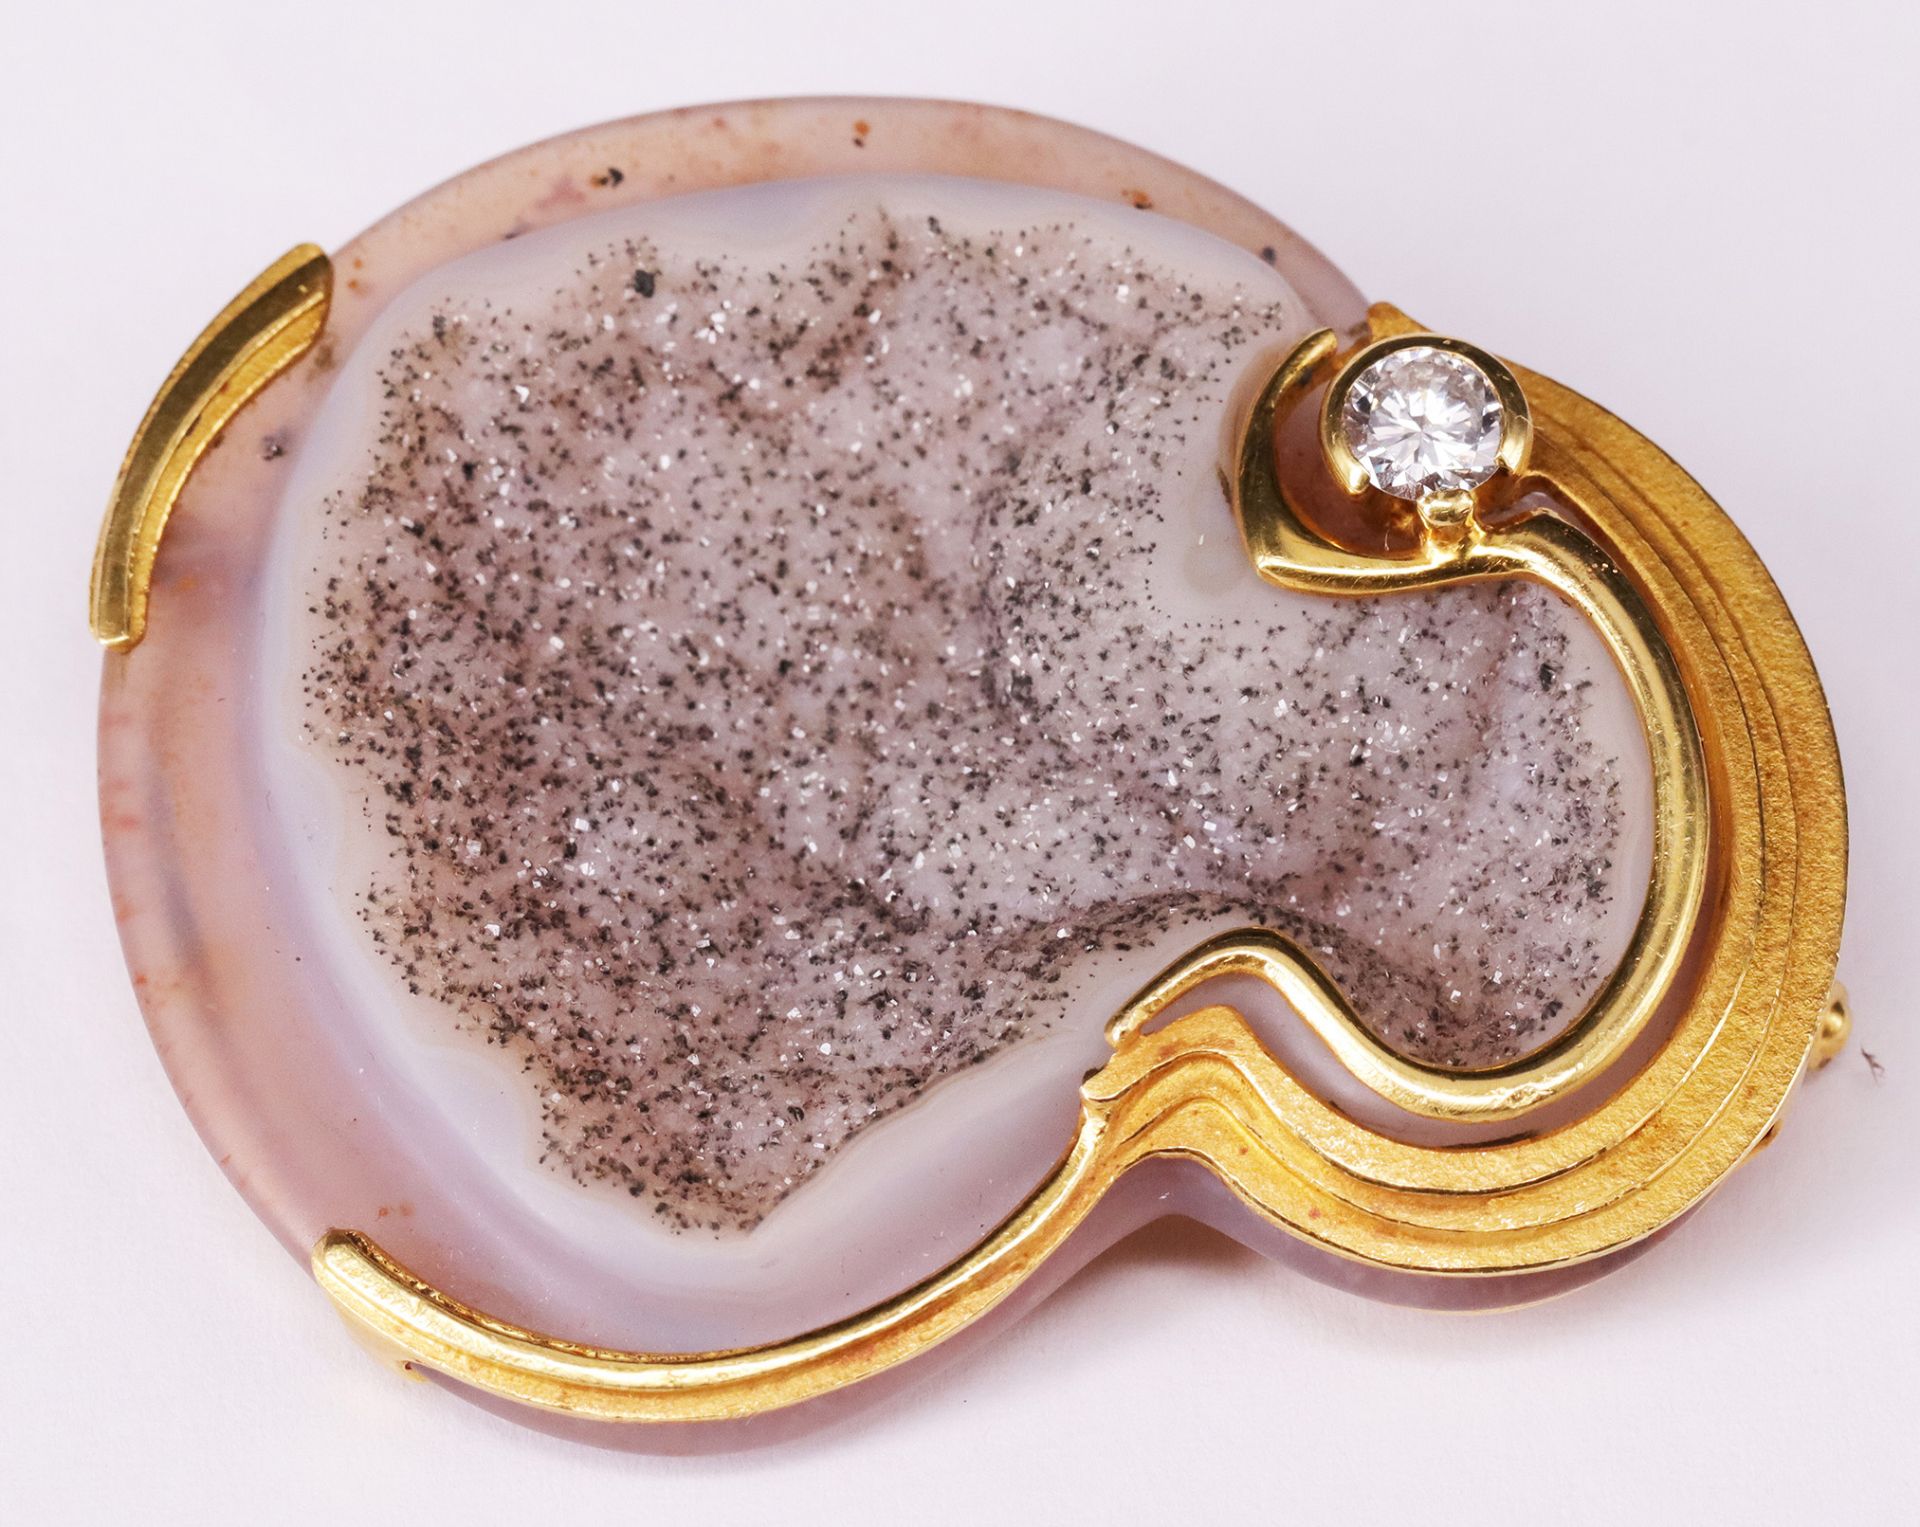 Brosche aus Quarzdruse und Brillant / brooch made of a quartz geode and a diamond. 750er GG,